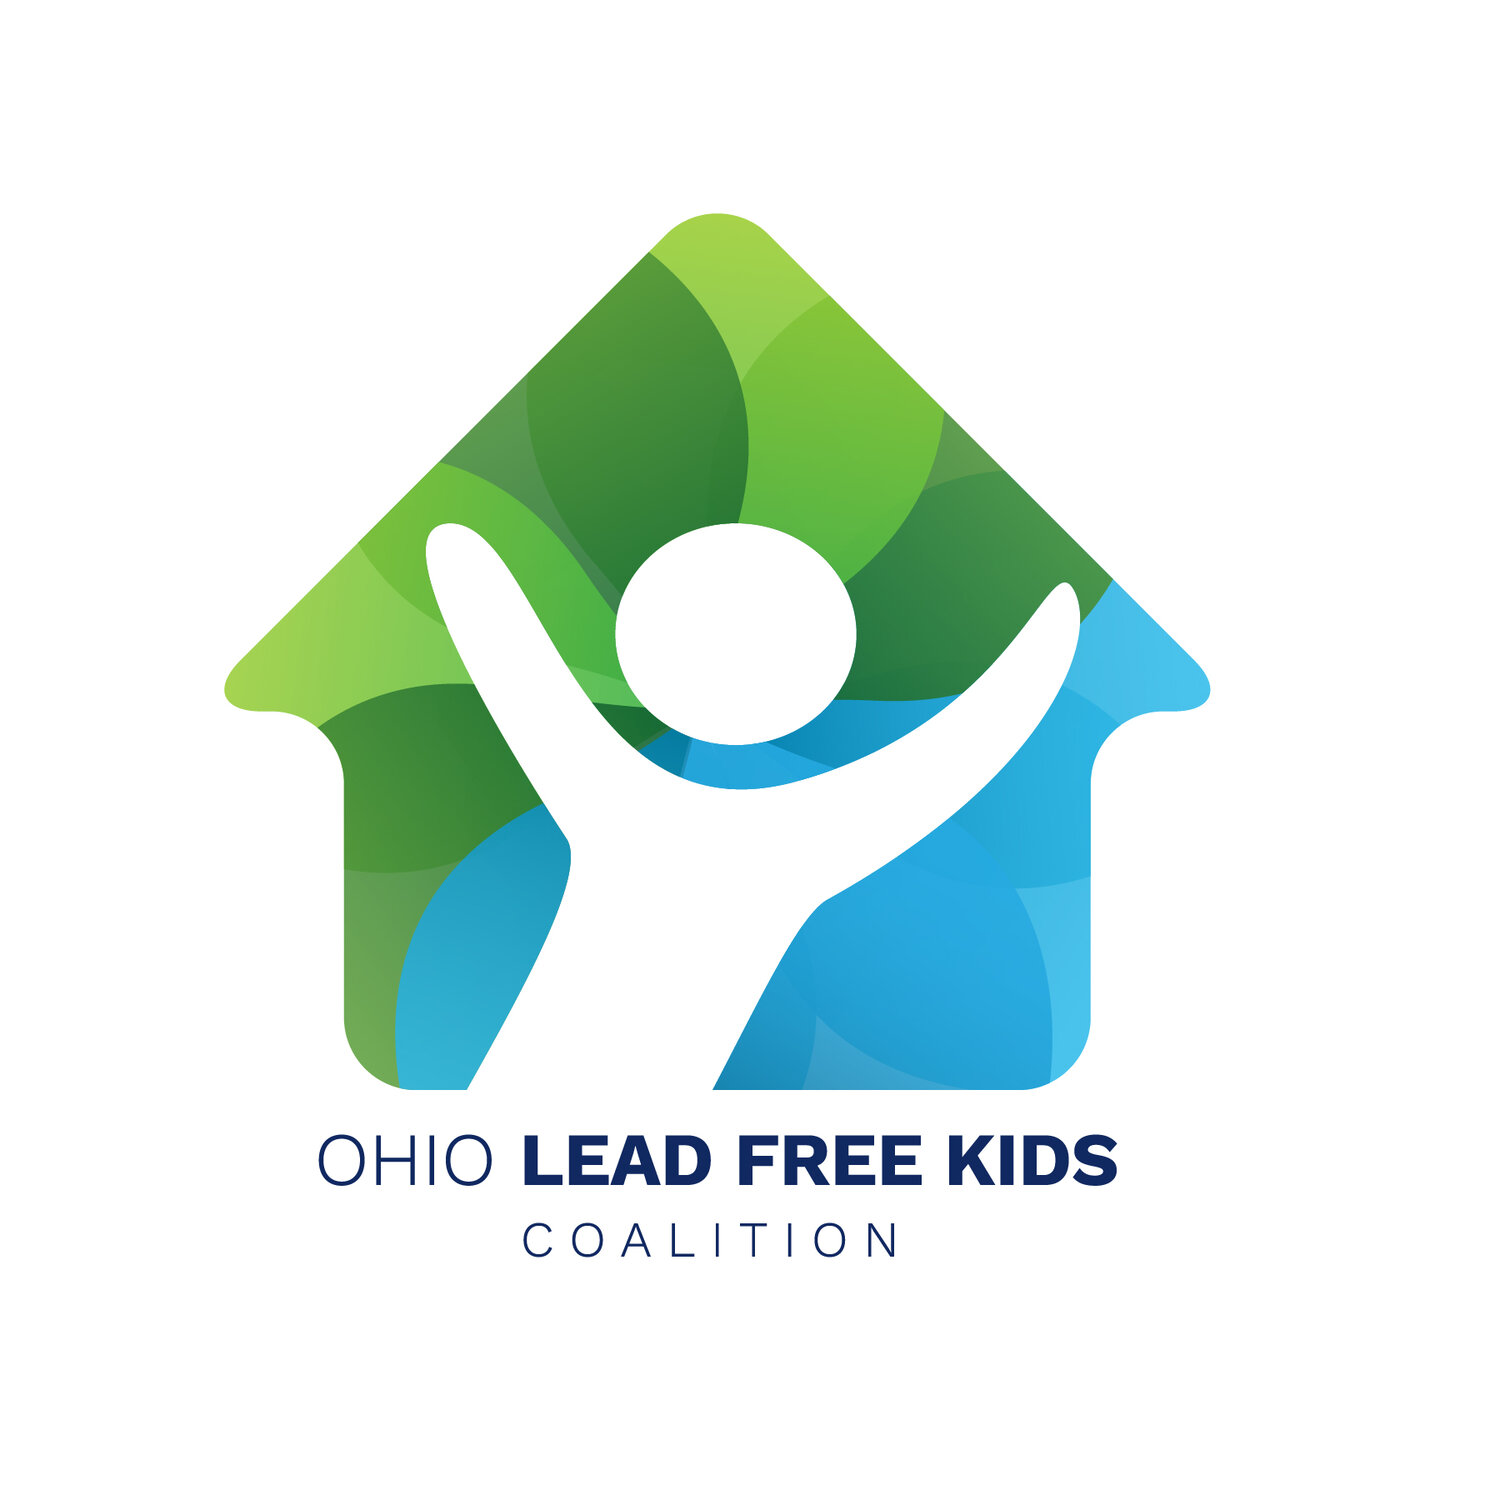 Ohio Lead Free Kids Coalition